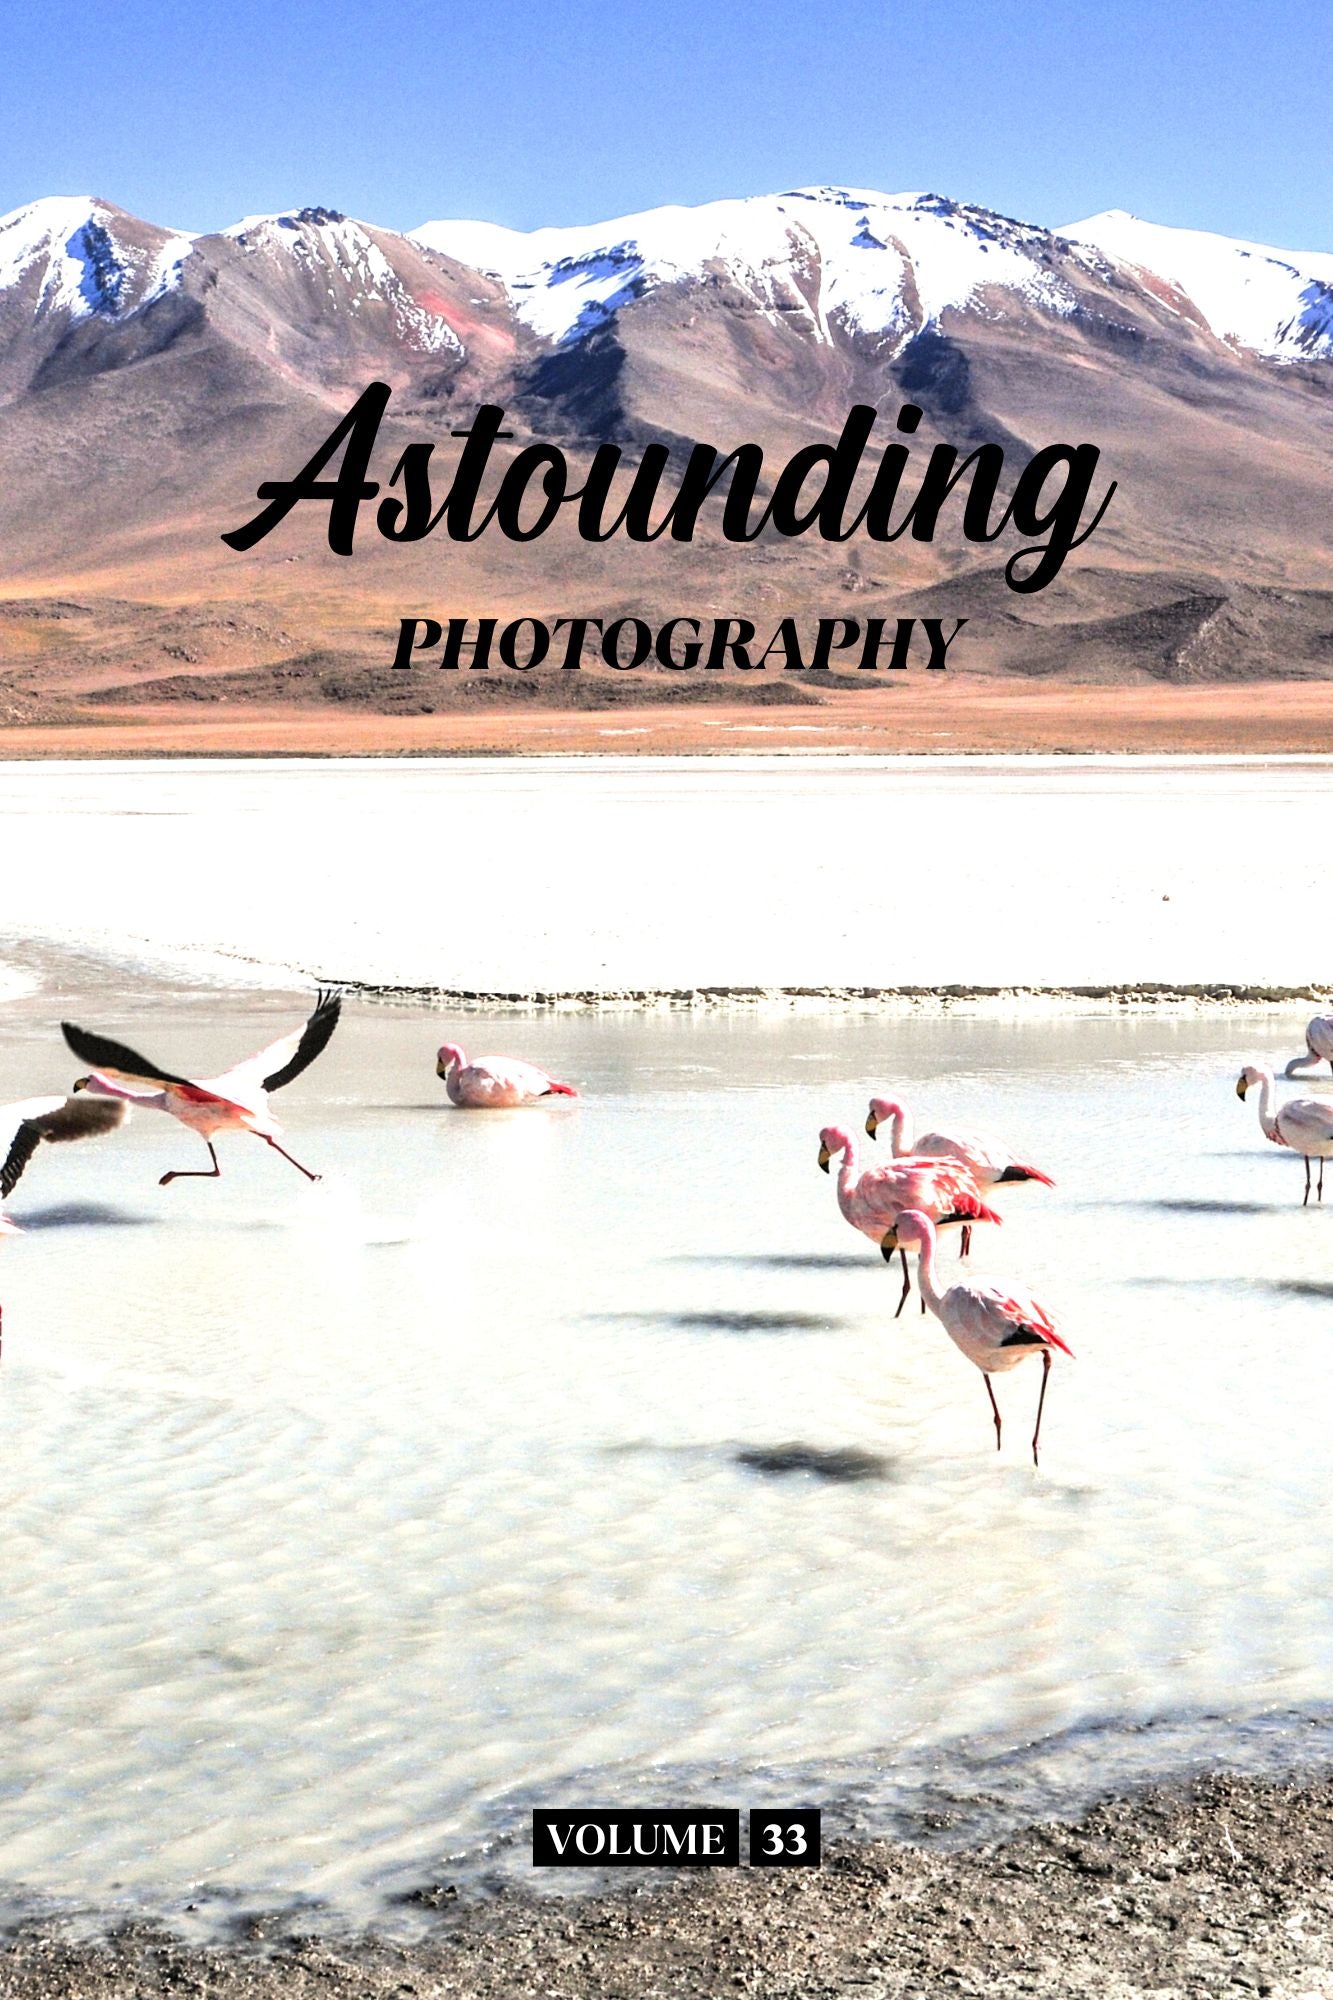 Astounding Photography Volume 33 (Physical Book Pre-Order)